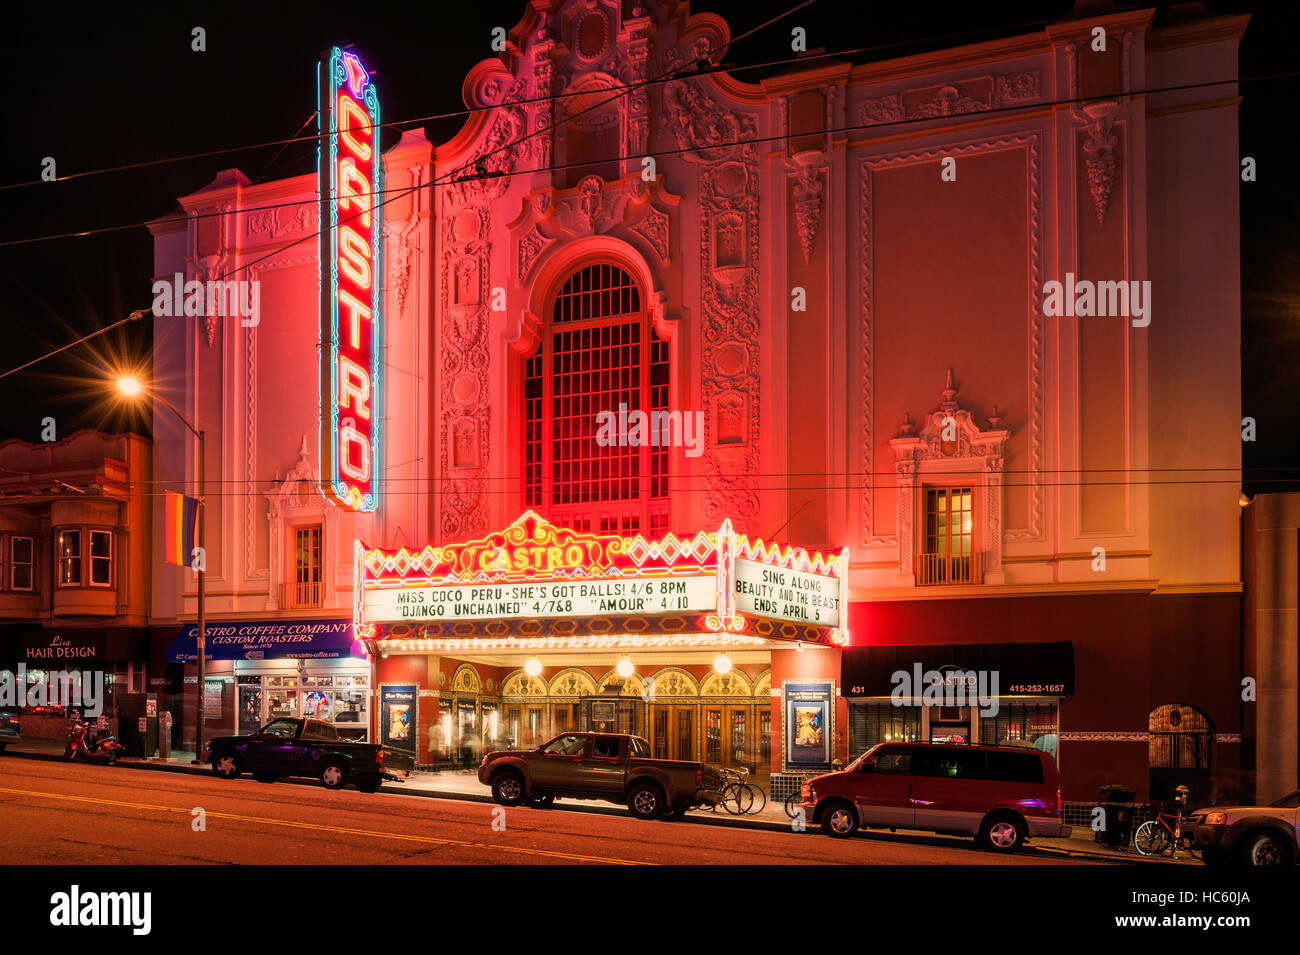 Teatro Castro de San Francisco Foto de stock